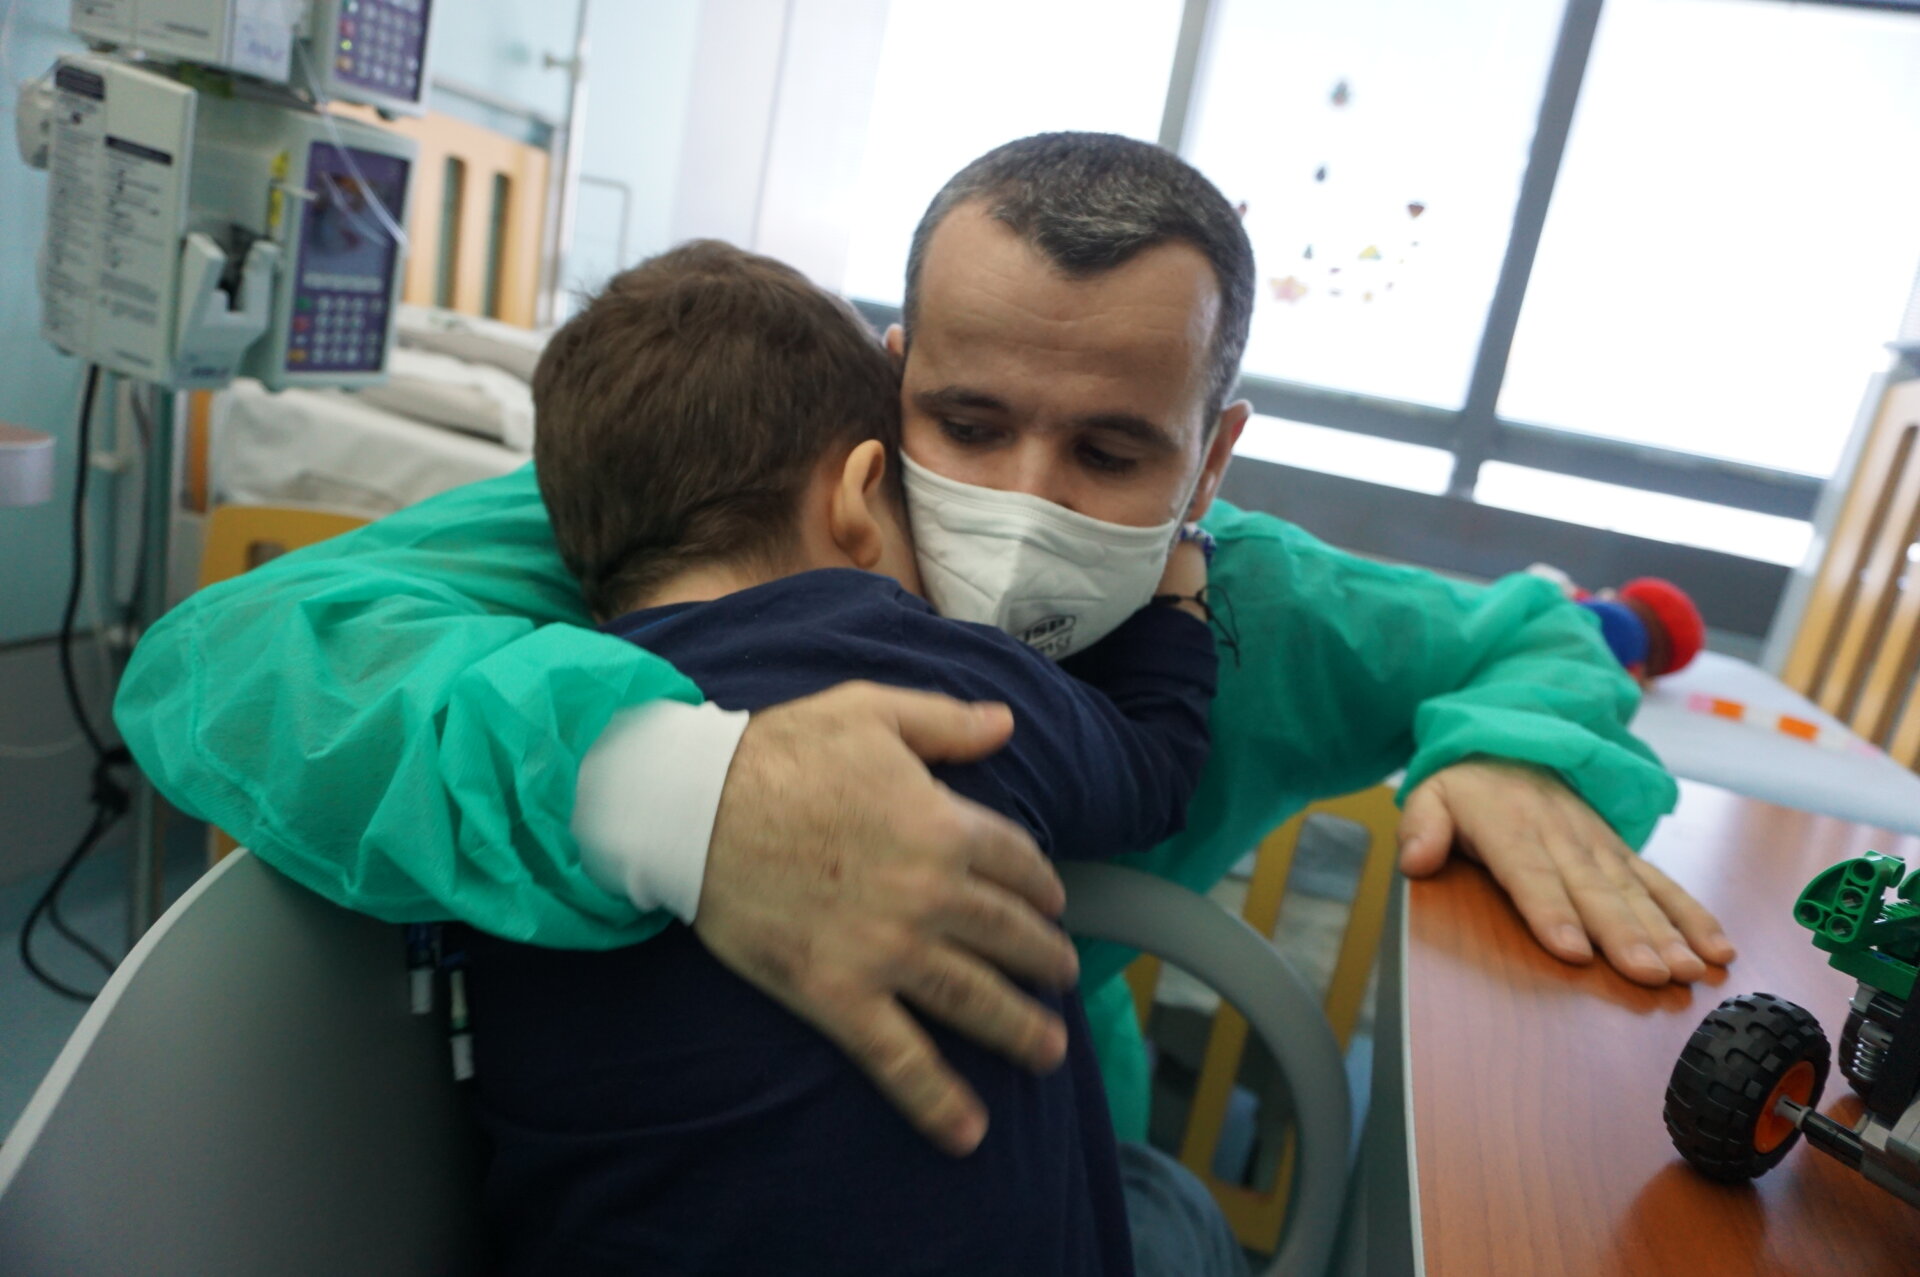 Shqiptari i shpëton jetën djalit 5-vjeçar, i dhuron mushkëritë në operacionin e rrallë në Itali